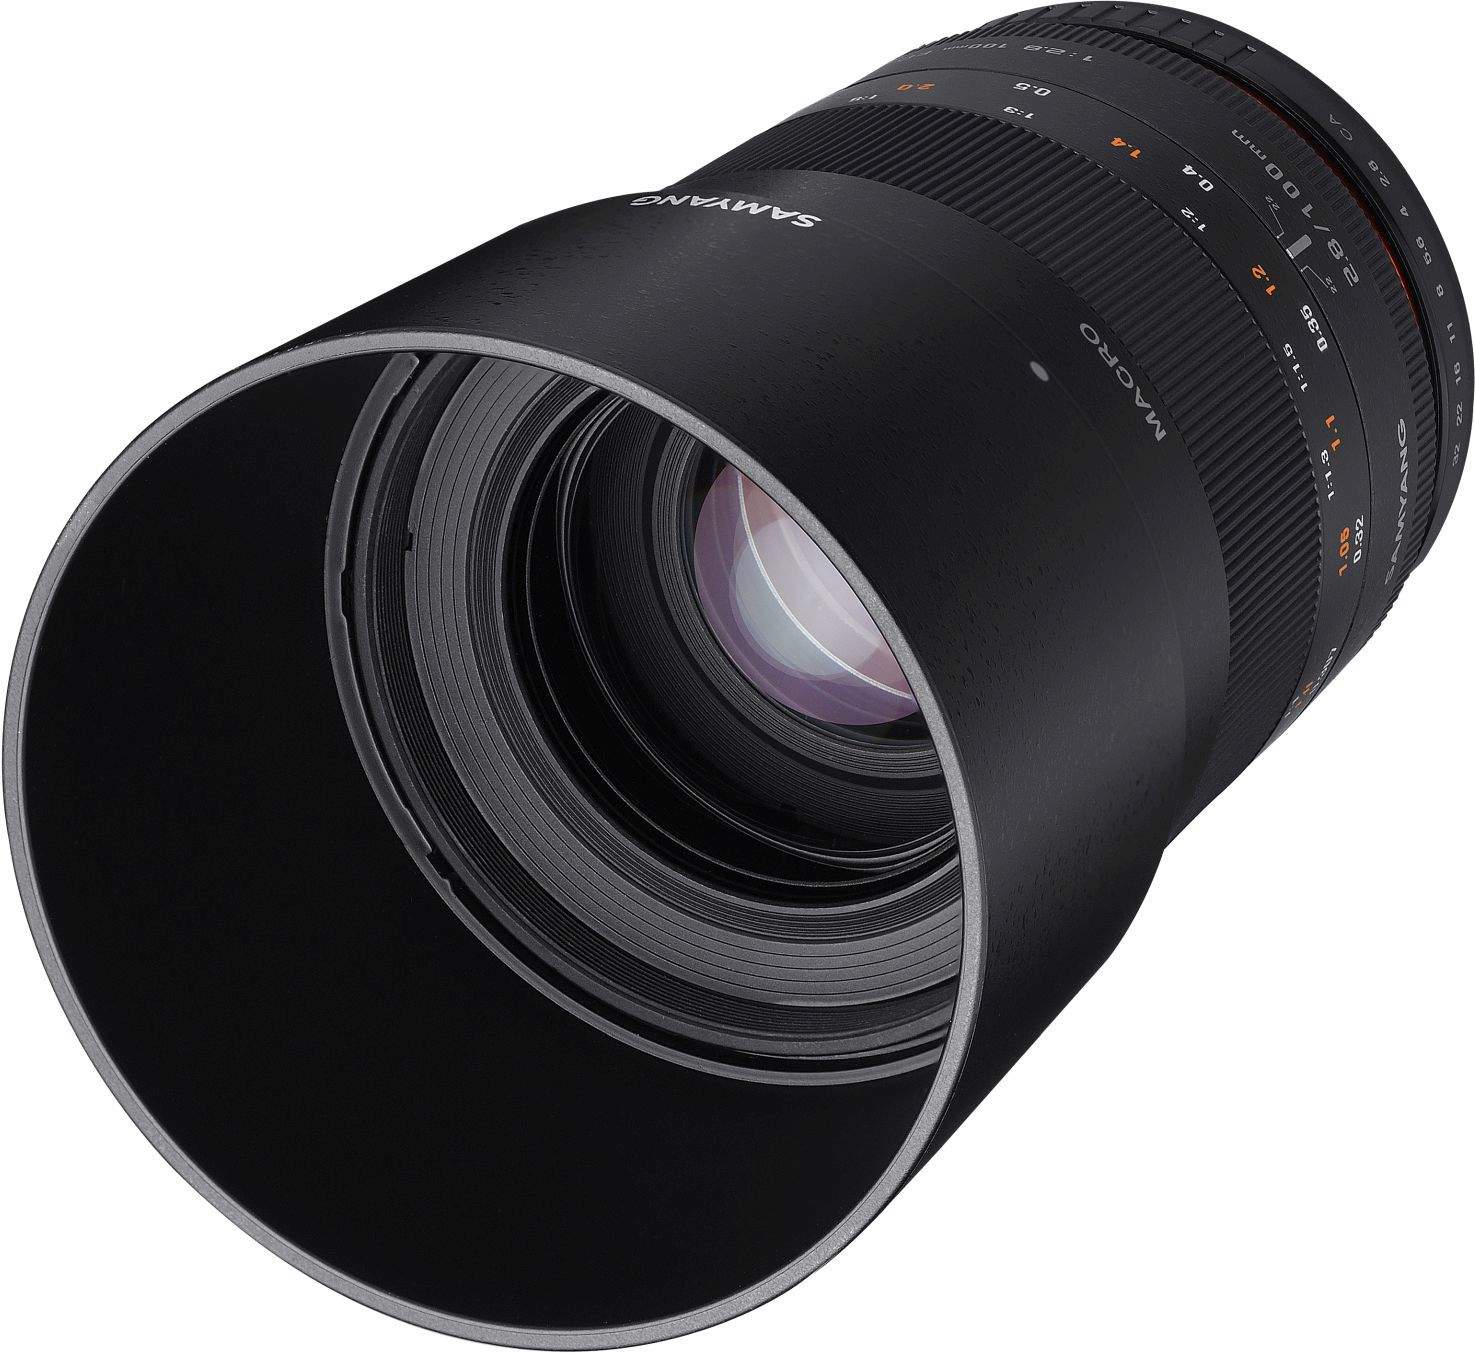 Samyang 100mm F2.8 Macro UMC II Fuji X Full Frame Camera Lens